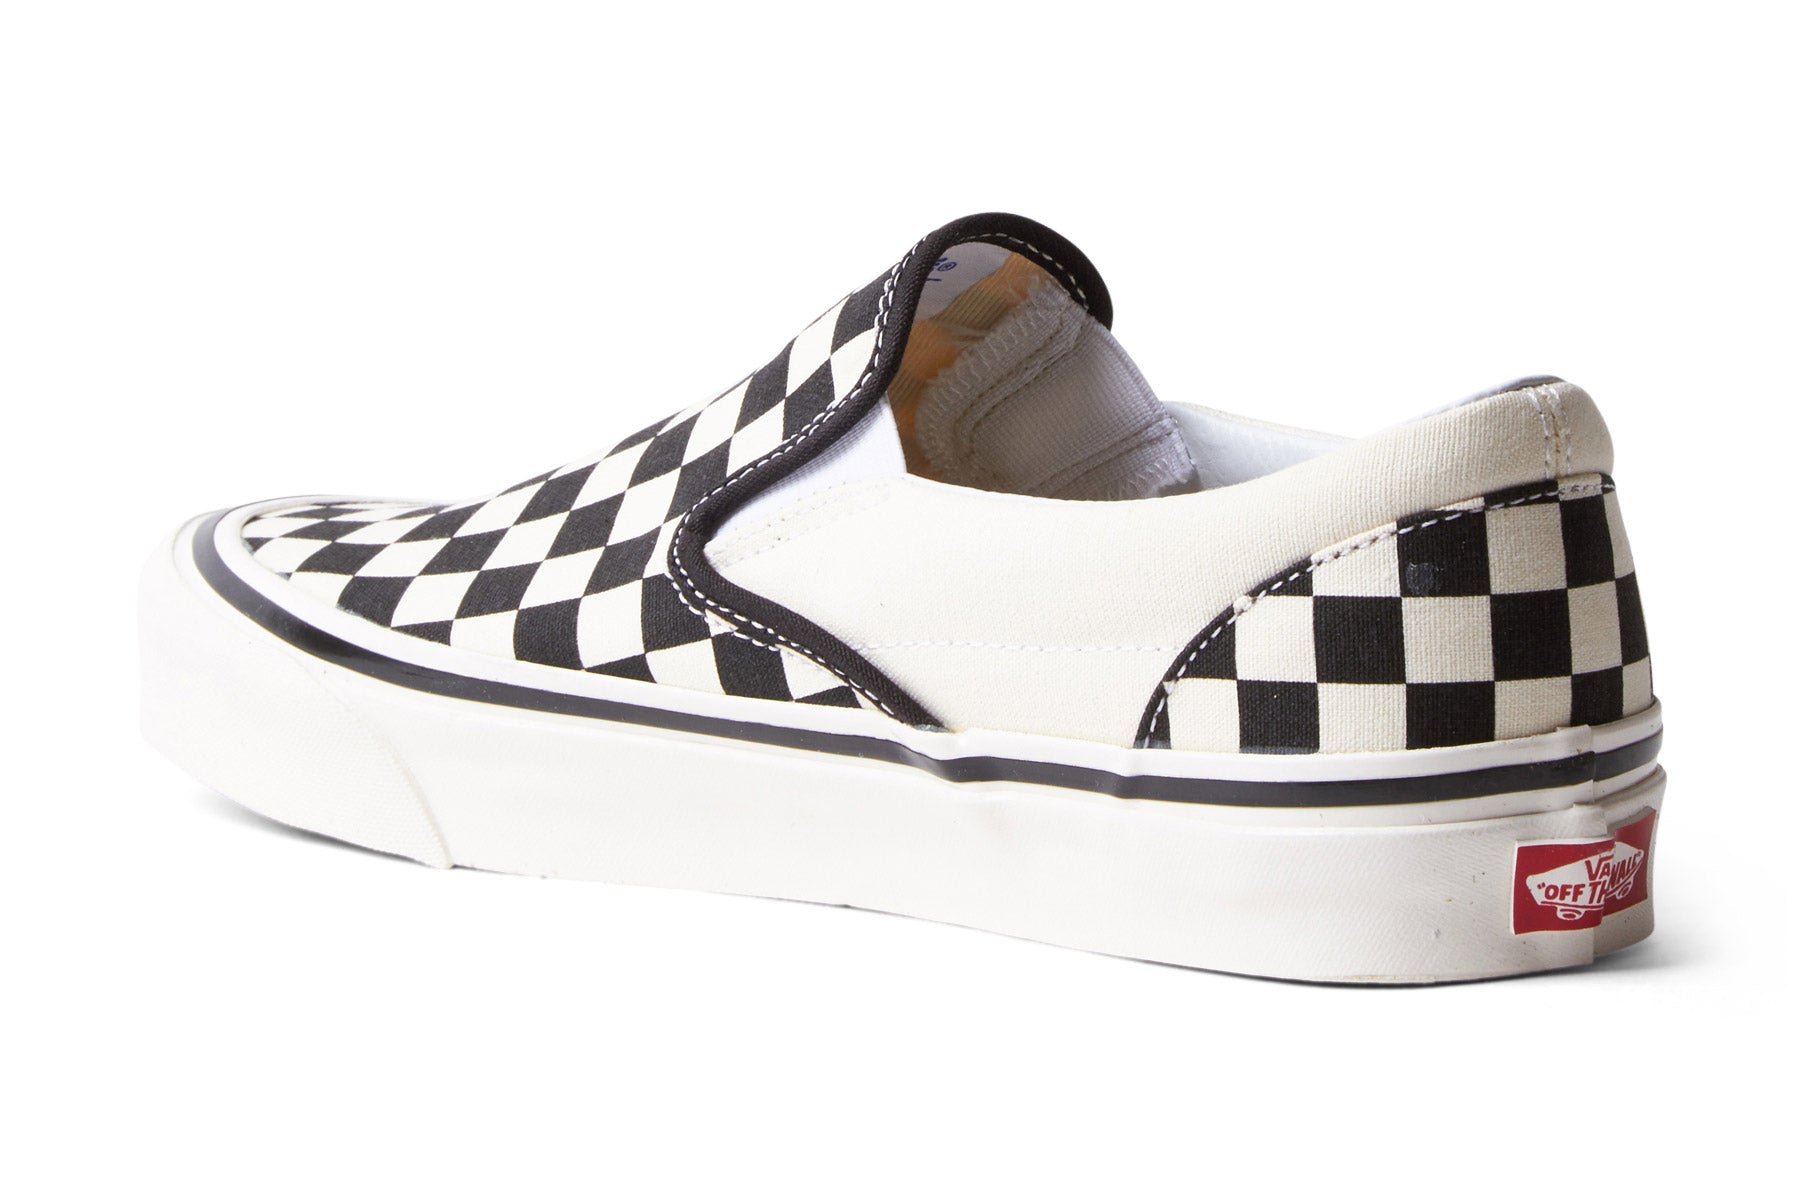 Vans Slip-On 98 DX Checkerboard (Anaheim) - Black / White